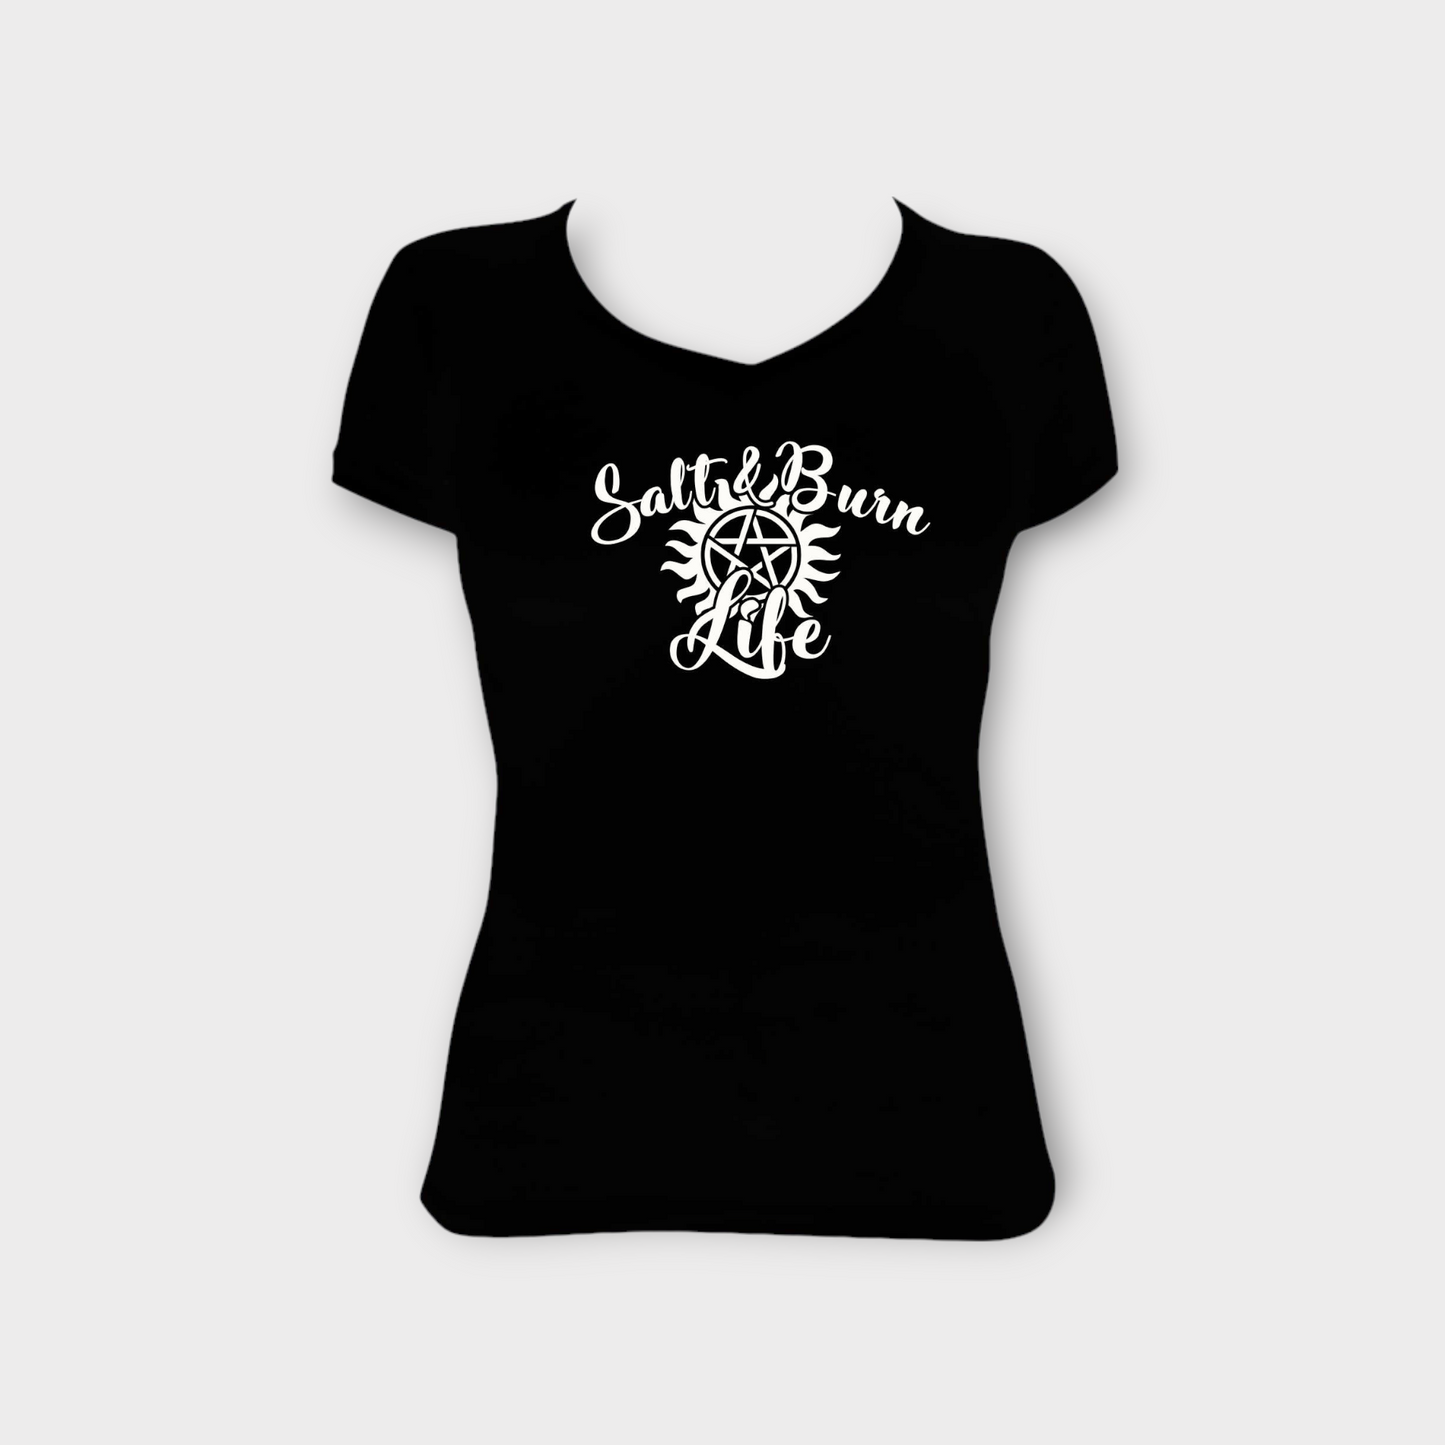 Salt n' Burn Life T-shirt